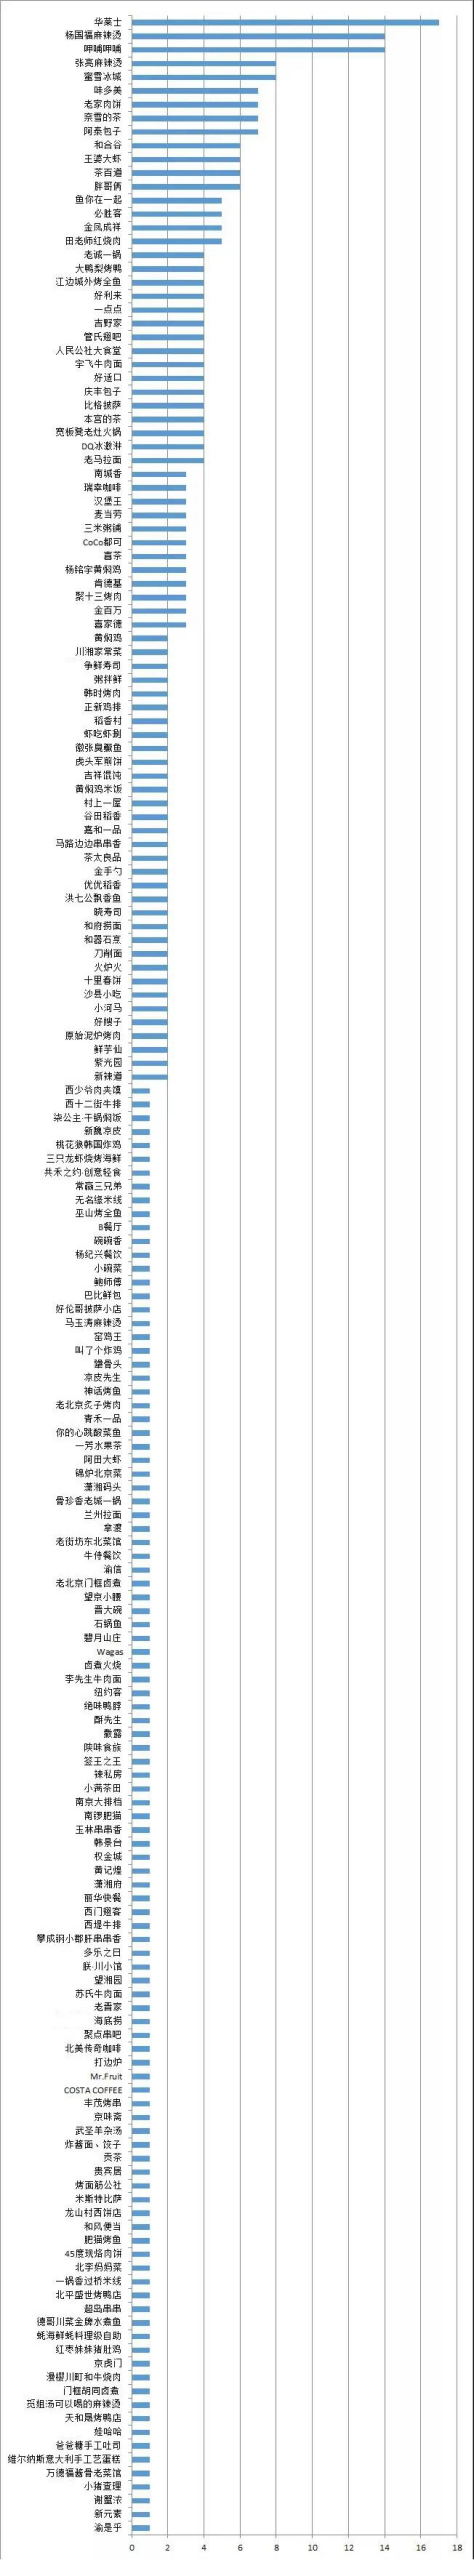 华莱士在北京食品安全大检查中位列“问题榜”首位，杨国福、呷哺呷哺次之